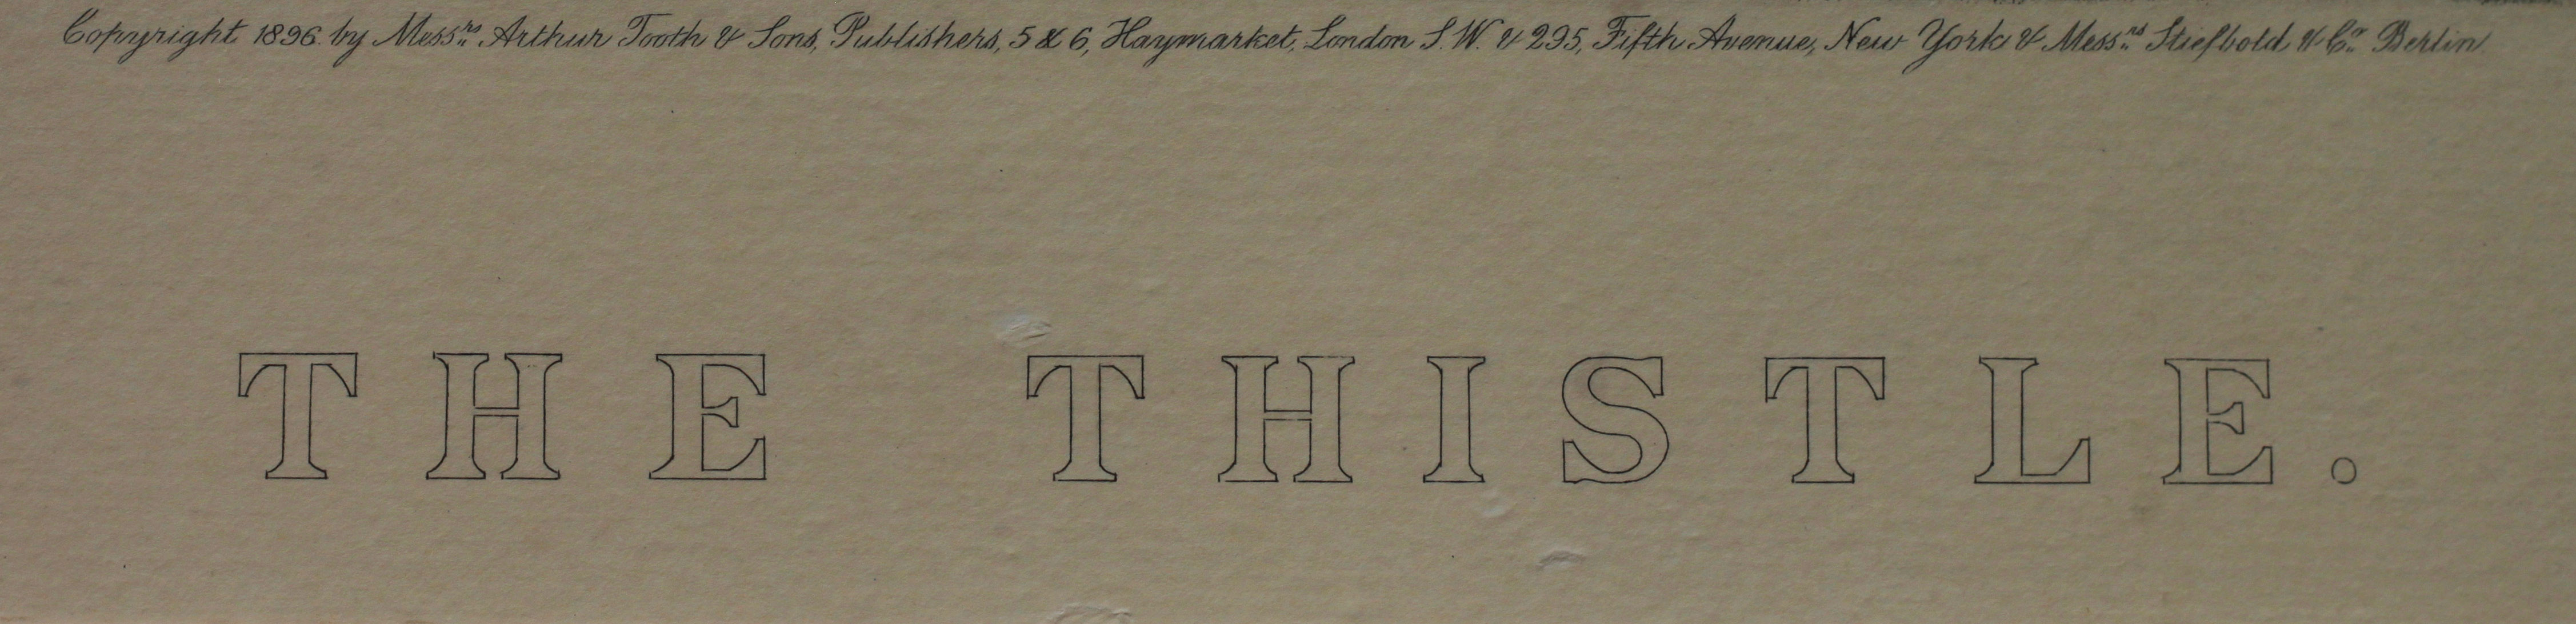 Click for larger image: Gordon Setter “The Thistle” photogravure after Thomas Blinks - Gordon Setter “The Thistle” photogravure after Thomas Blinks